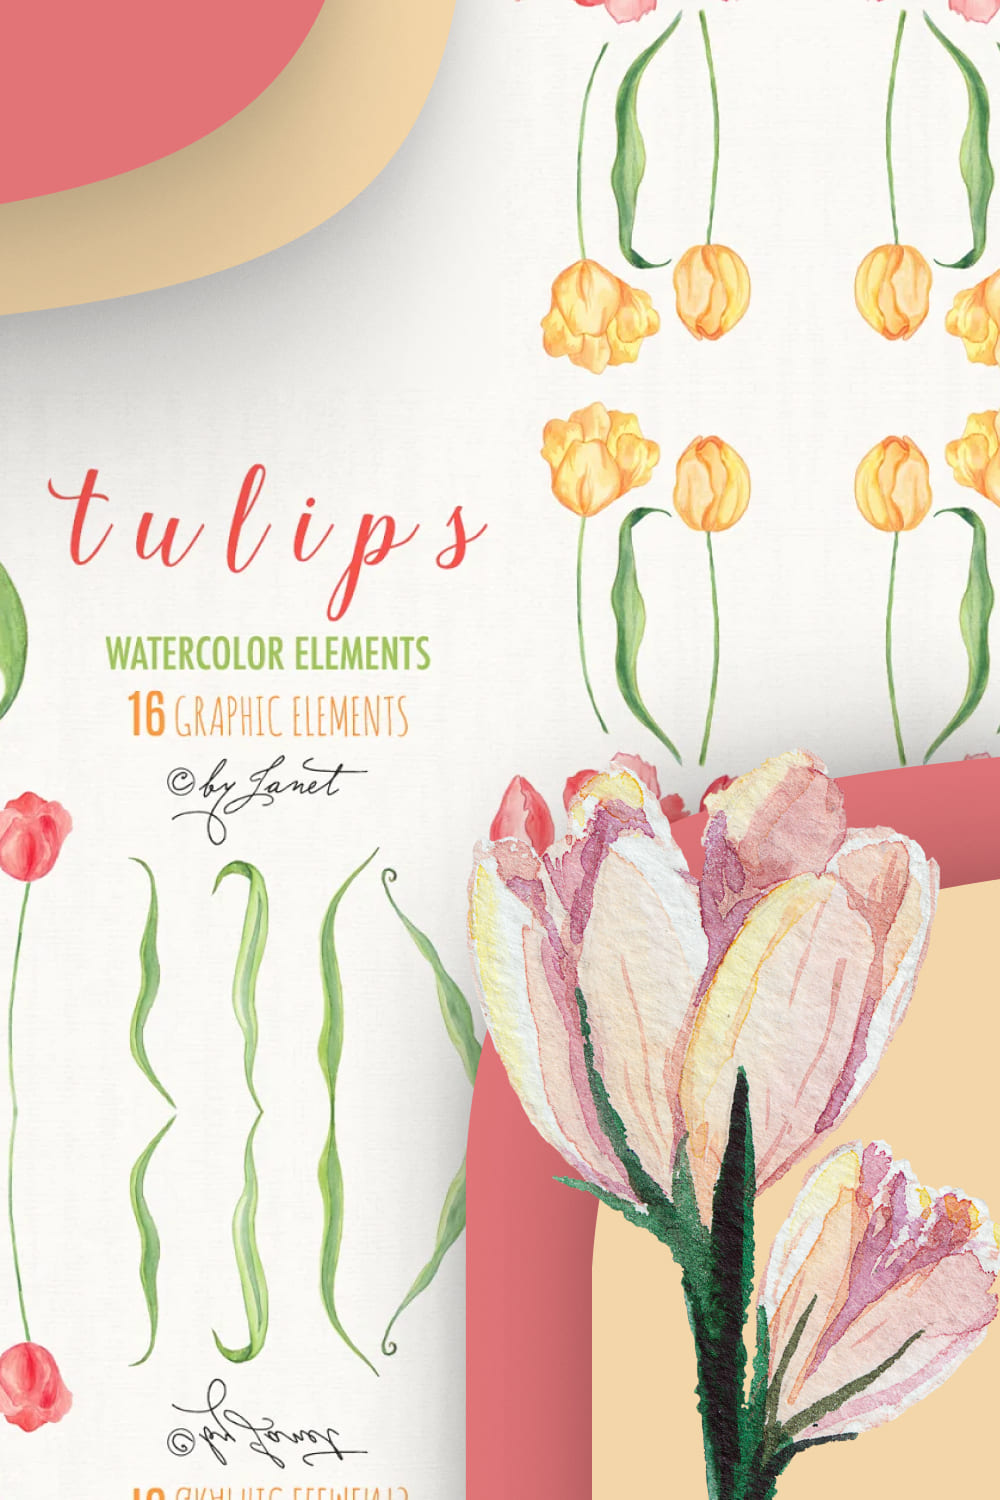 05 tulips1000x1500 1